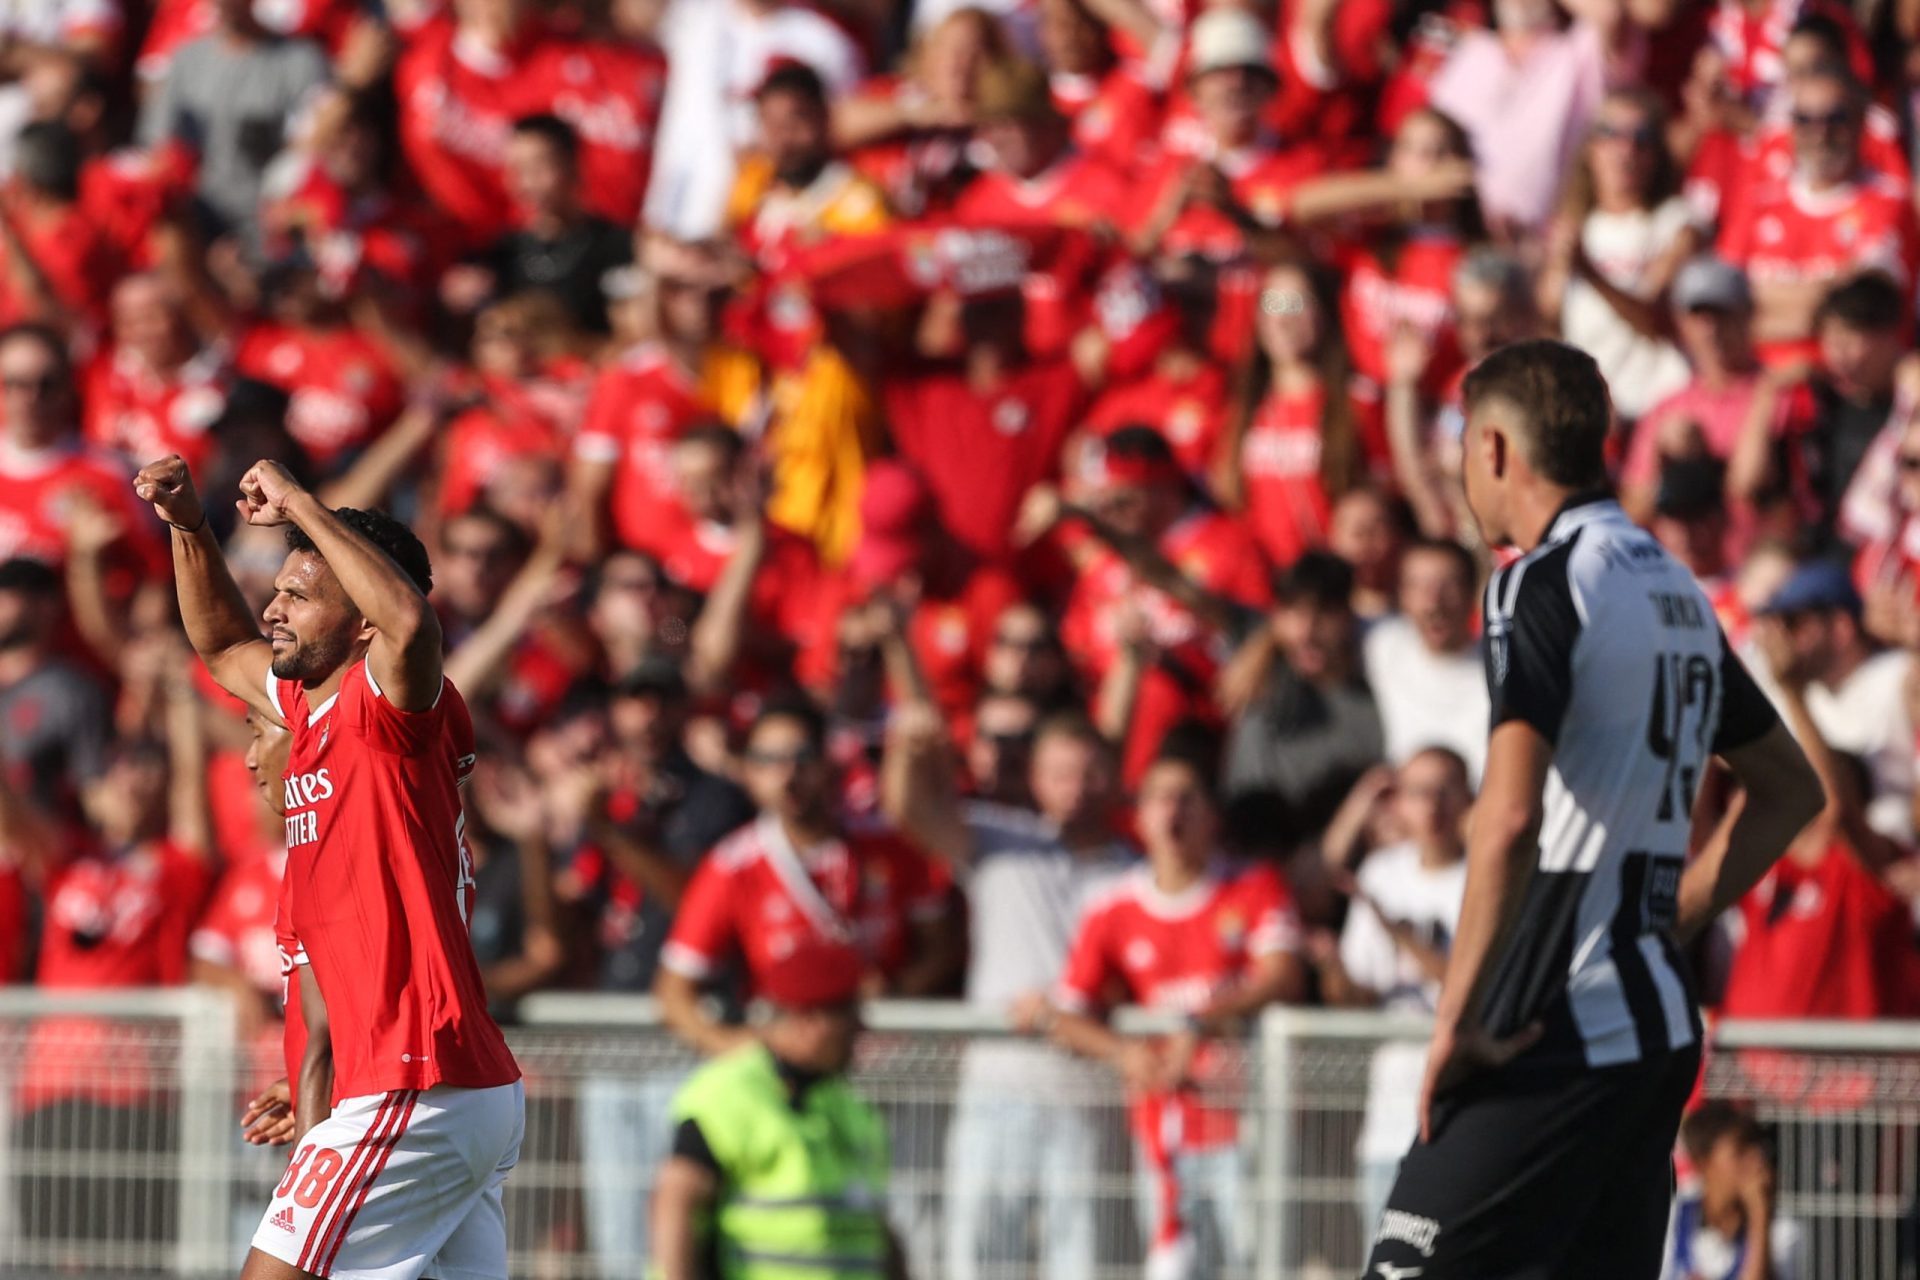 Goleada do Benfica sobre Portimonense quase que sabe a título